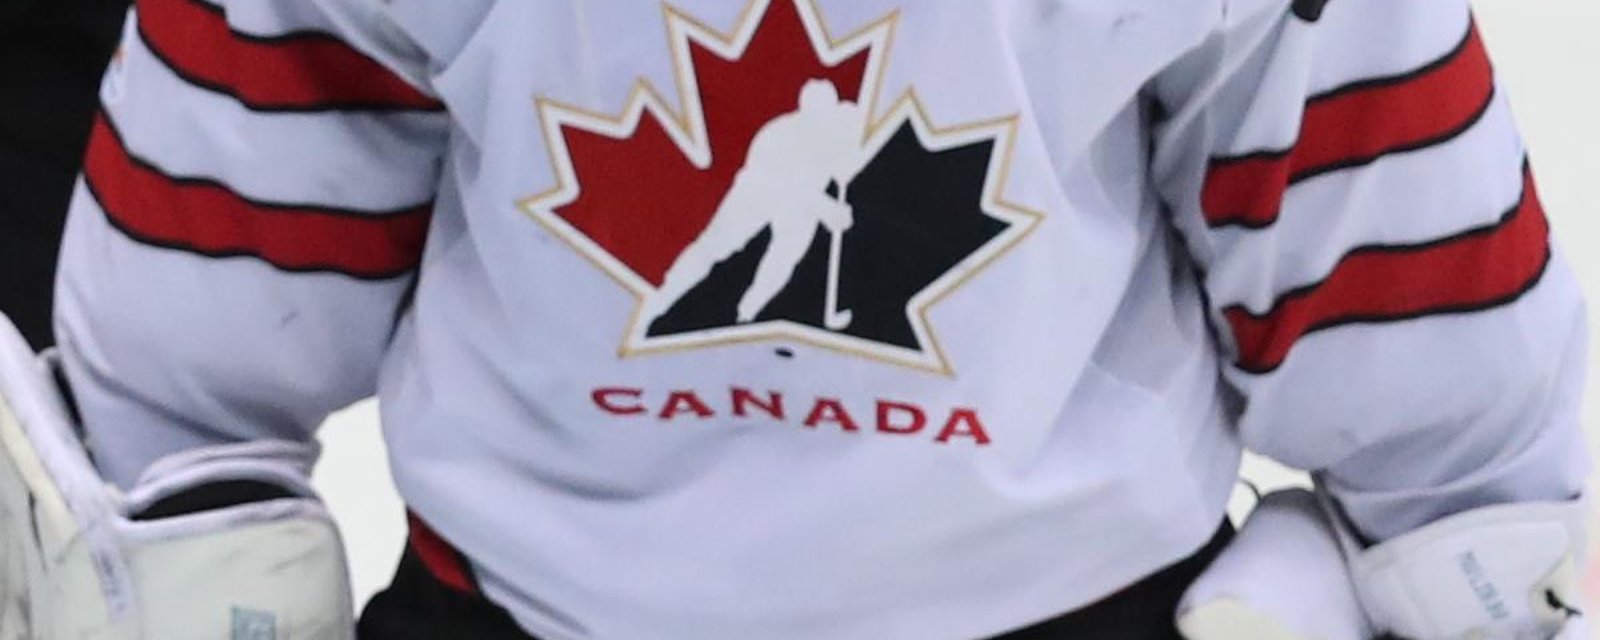 Un ancien du Canadien devant le filet du Canada aux Jeux olympiques?